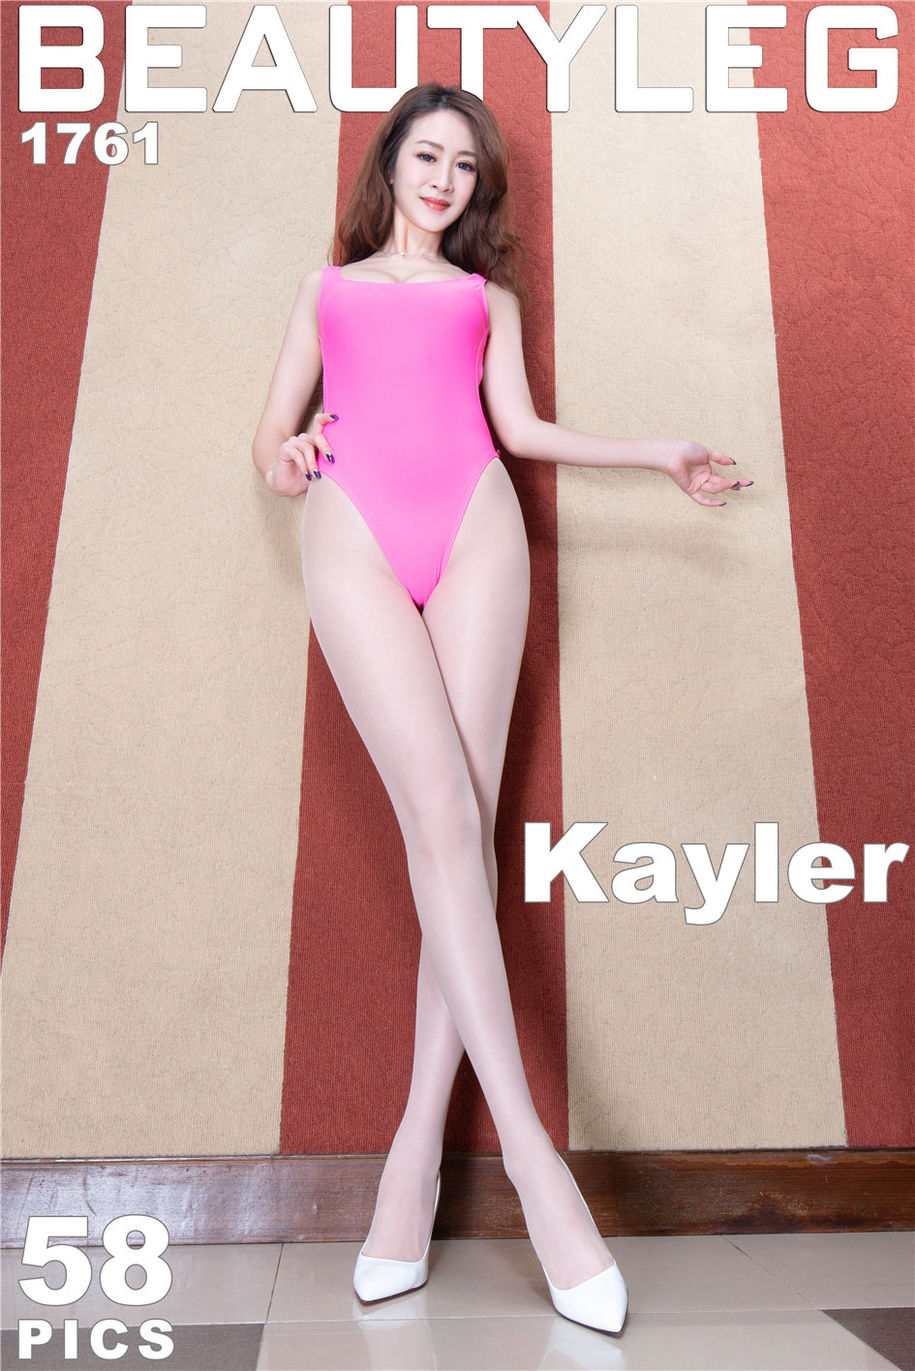 Beautyleg 高叉泳装美女Kaylar室内撩人姿势大胆人体艺术写真(第2页)